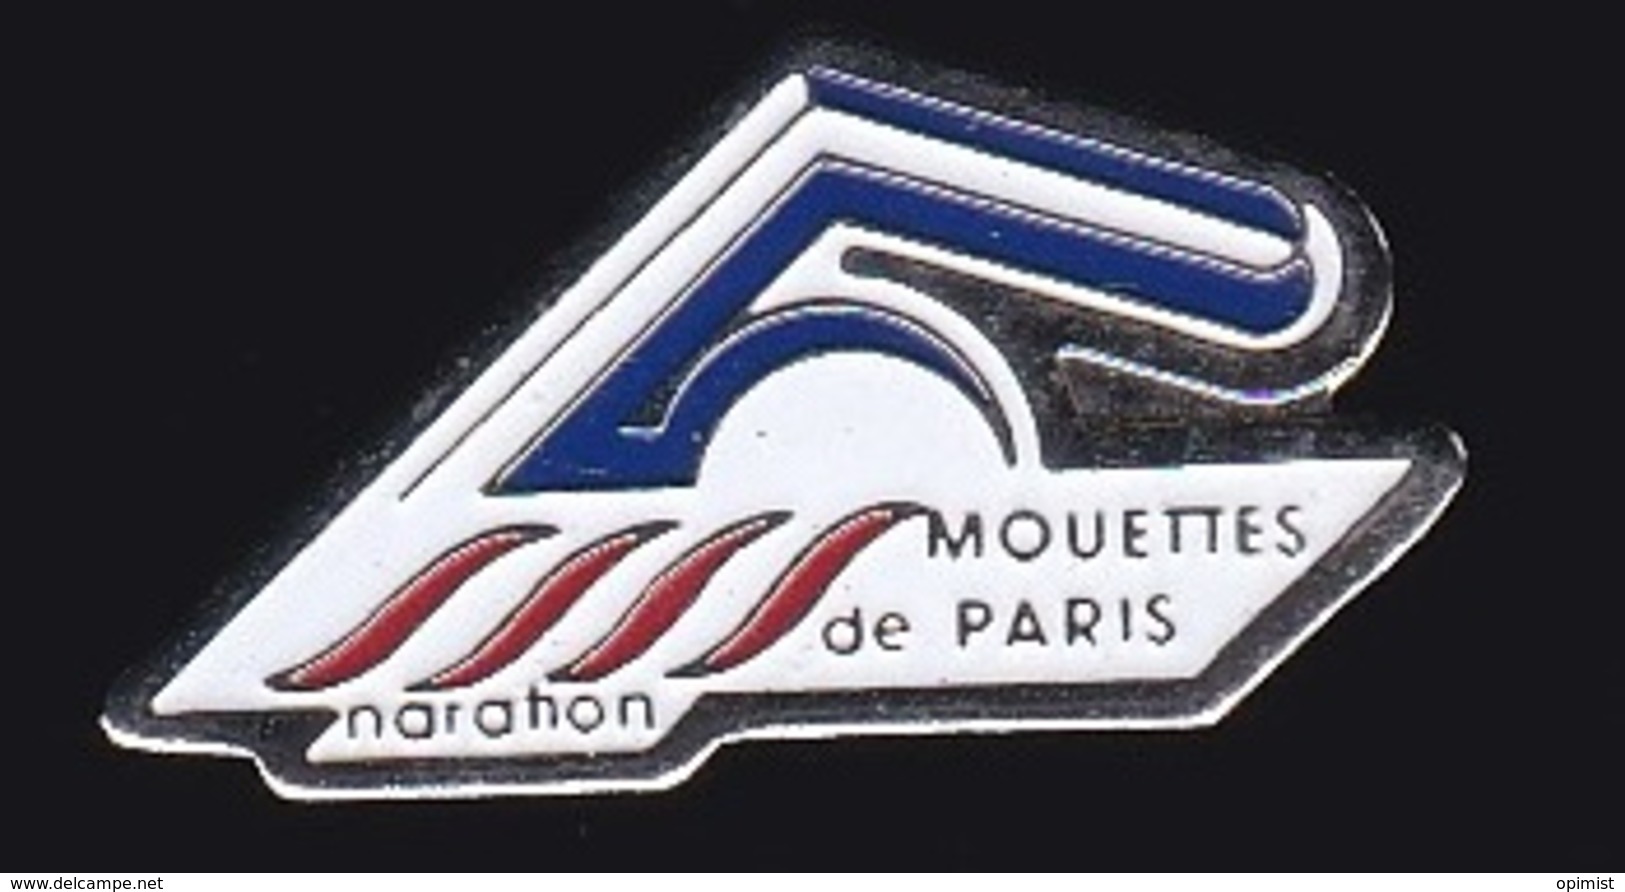 64467-Pin's.Club Des Mouettes De Paris - Natation.Marathon. - Natation